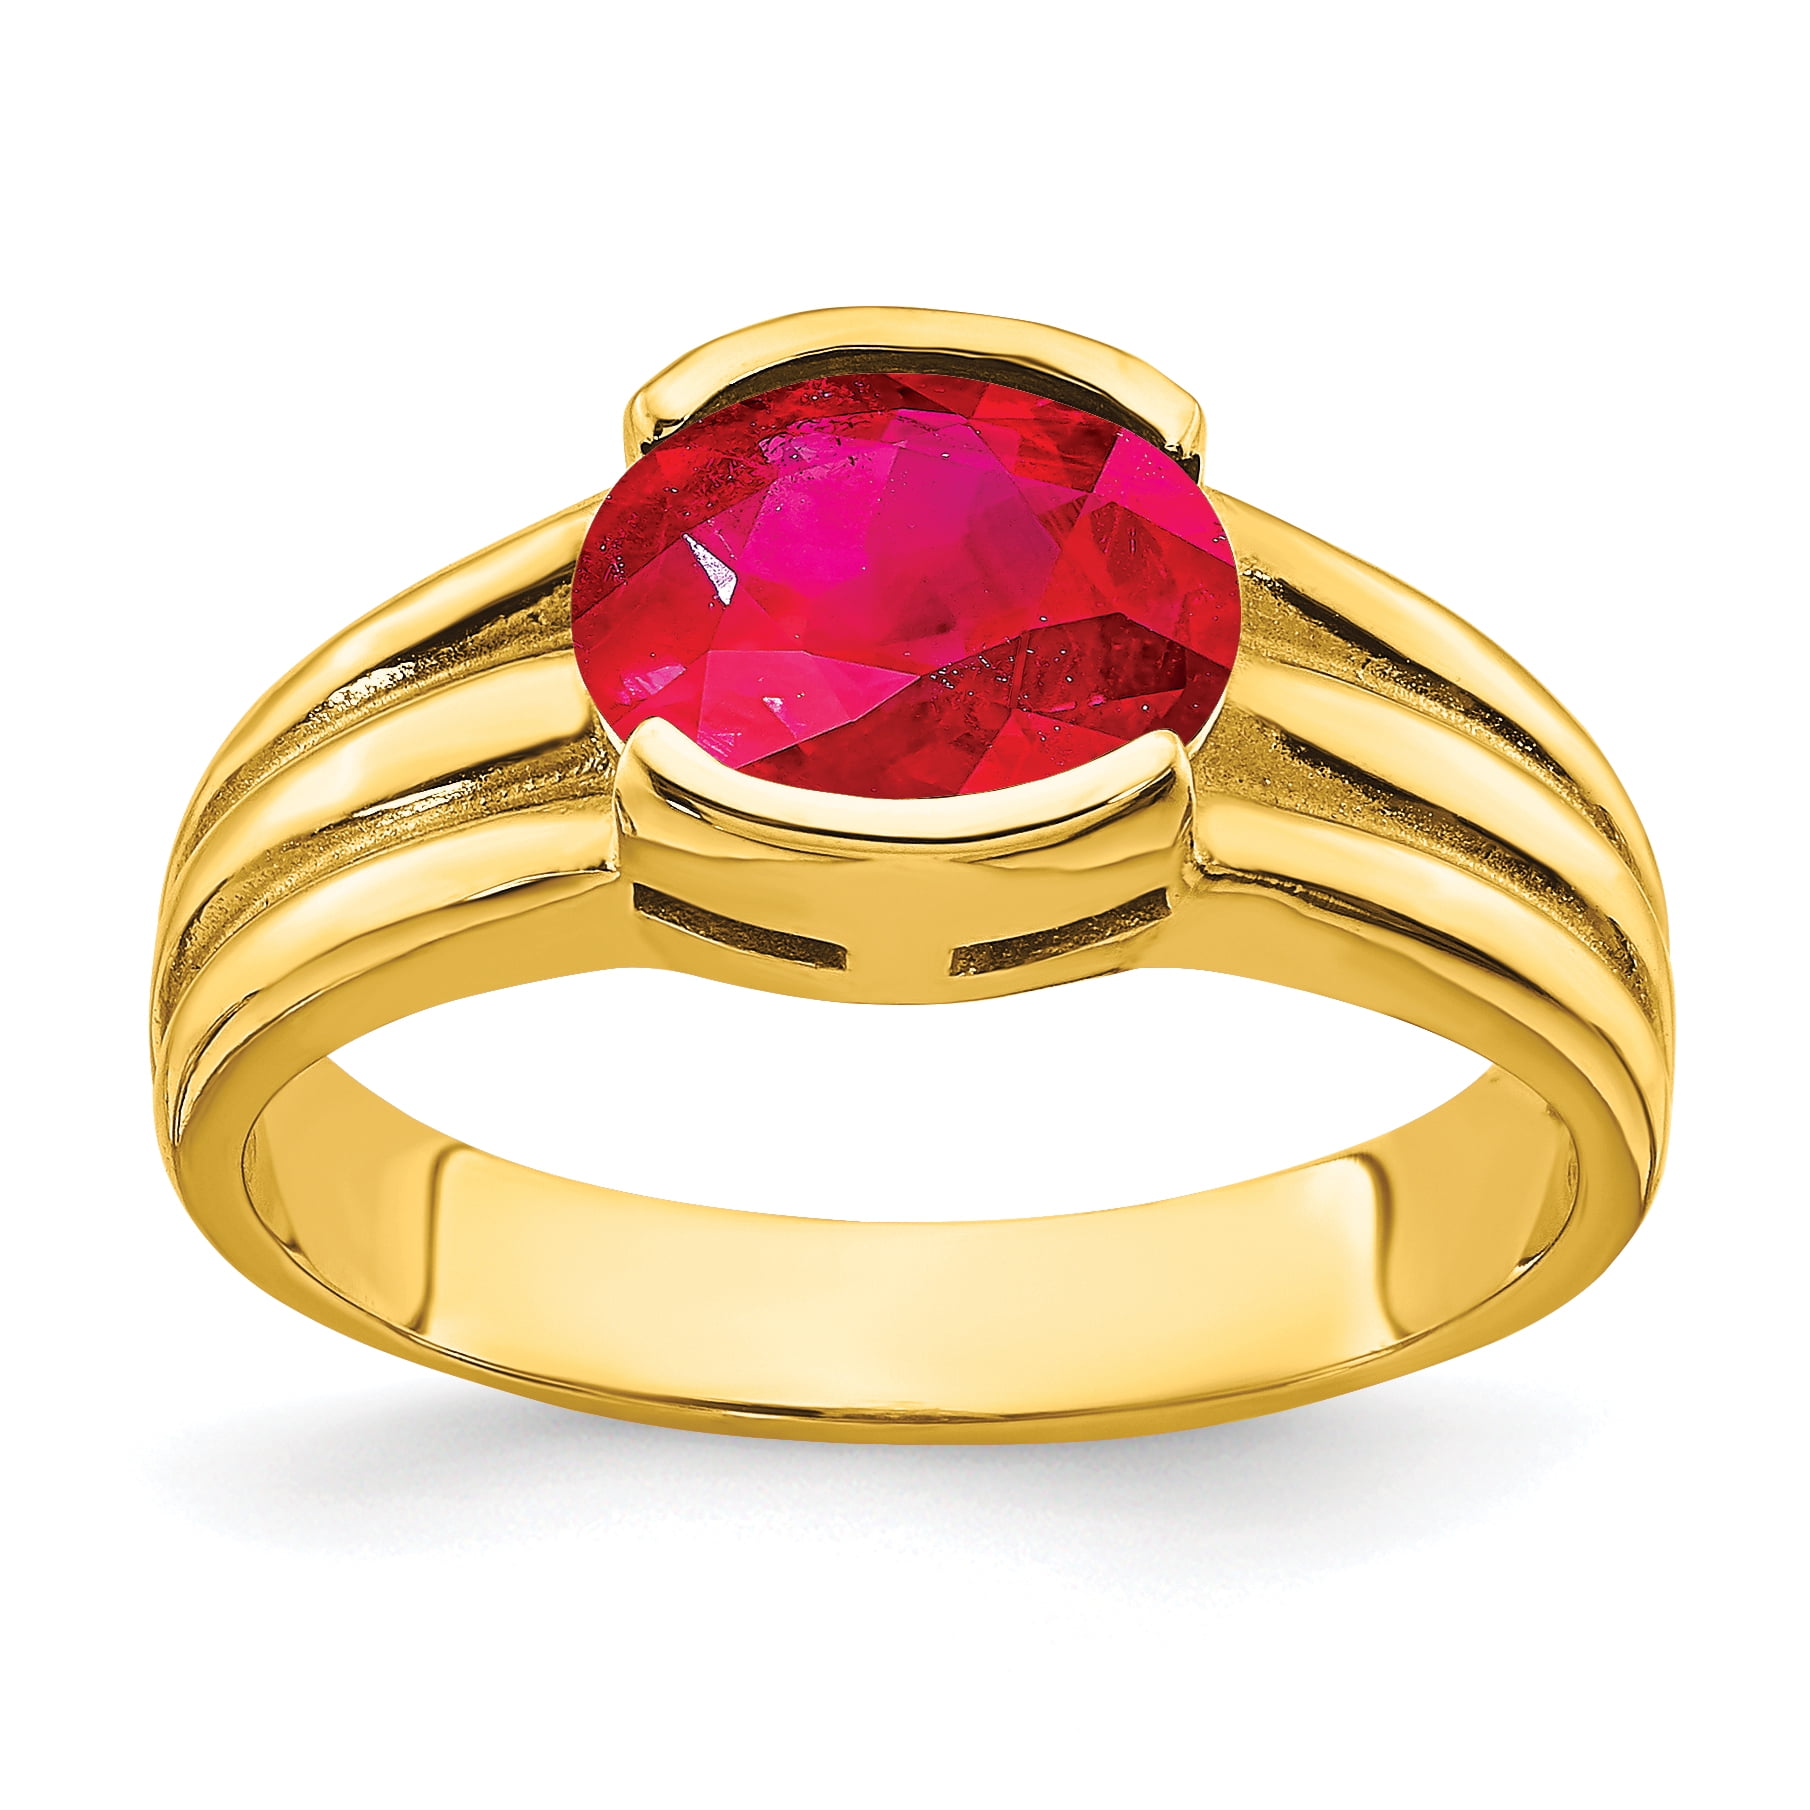 Manik (Ruby) ring – Vaidik Online